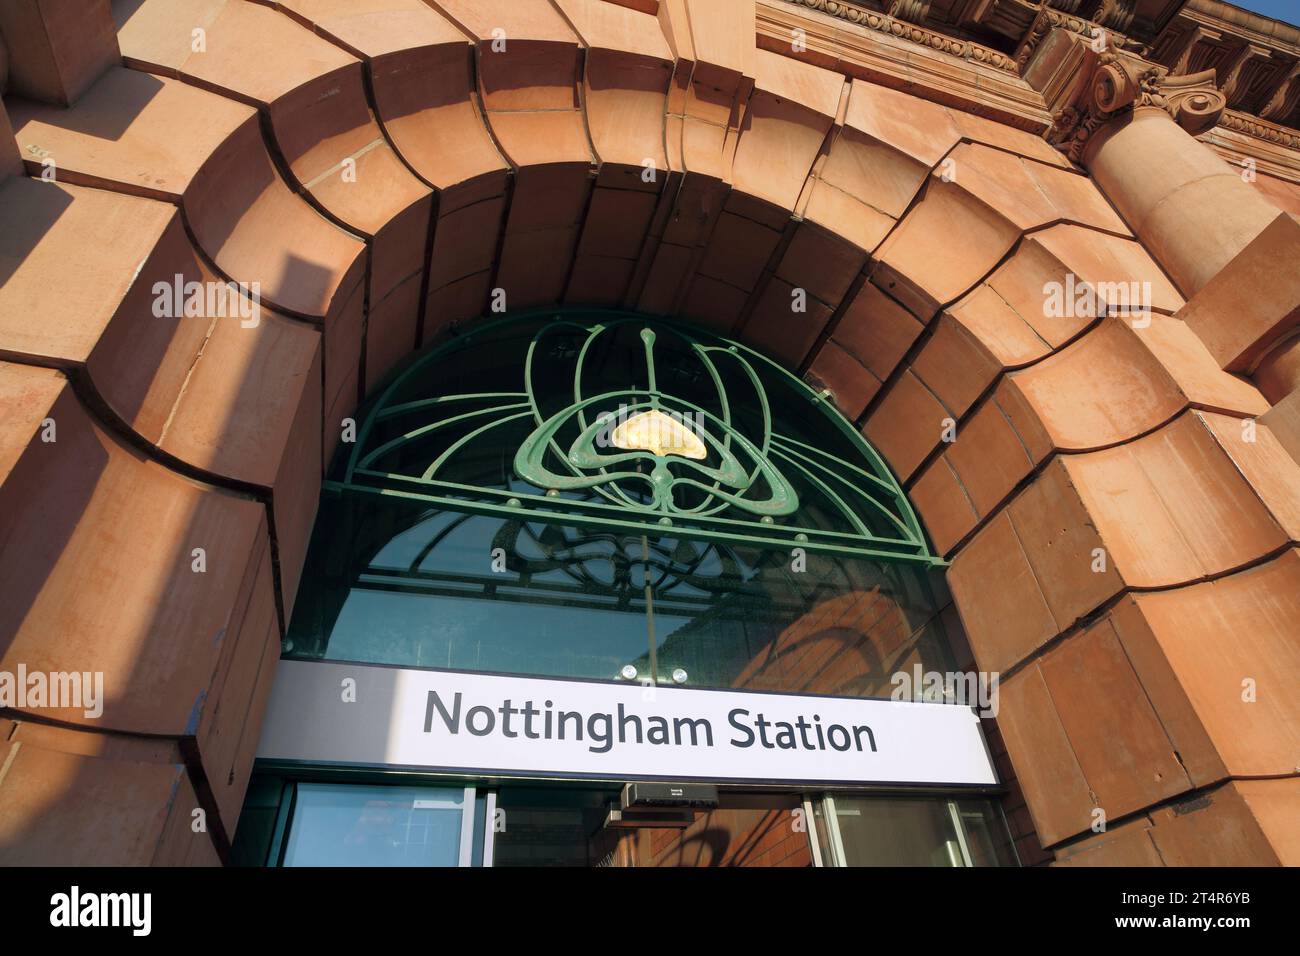 Dettagli in stile Art Nouveau in un'entrata alla stazione di Nottingham. Foto Stock